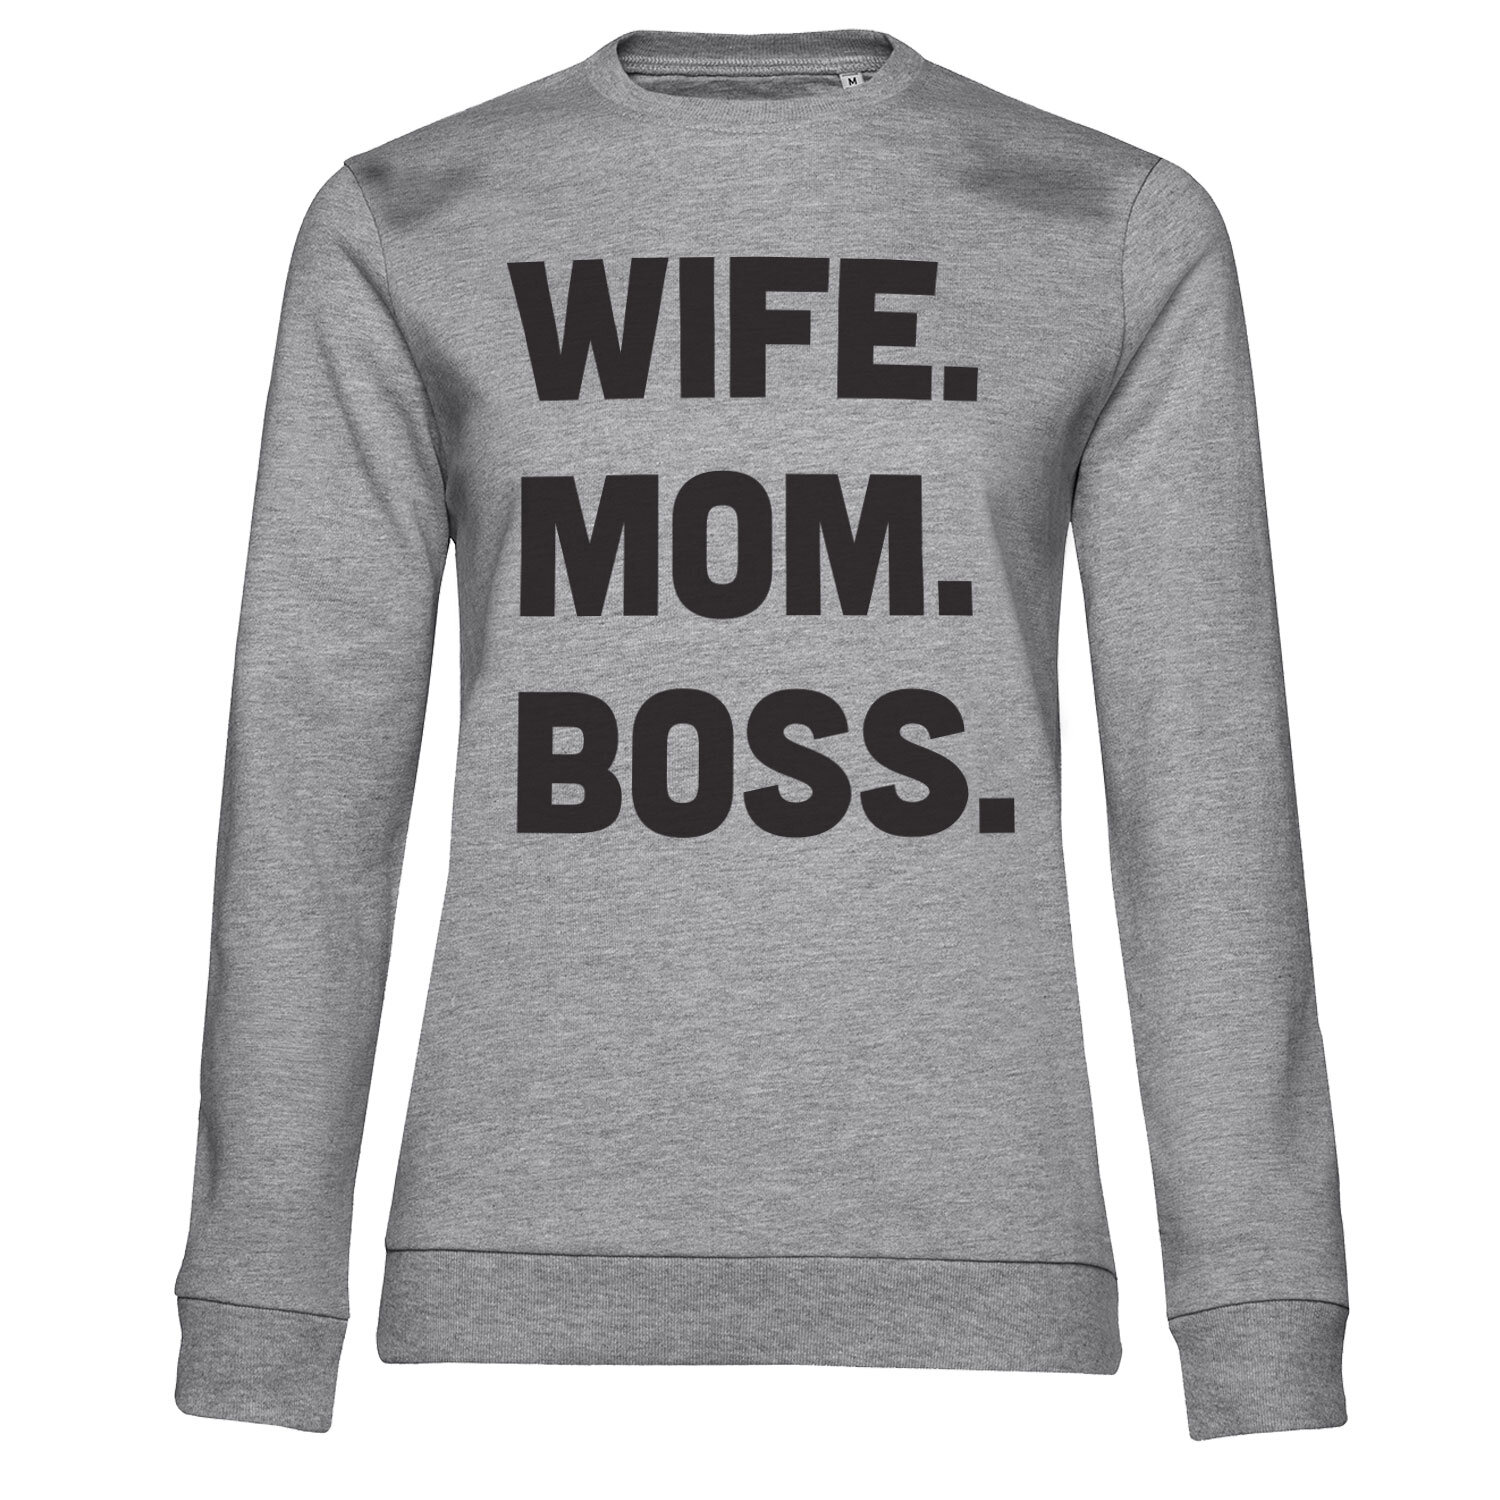 Wife - Mom - Boss Girly Sweatshirt